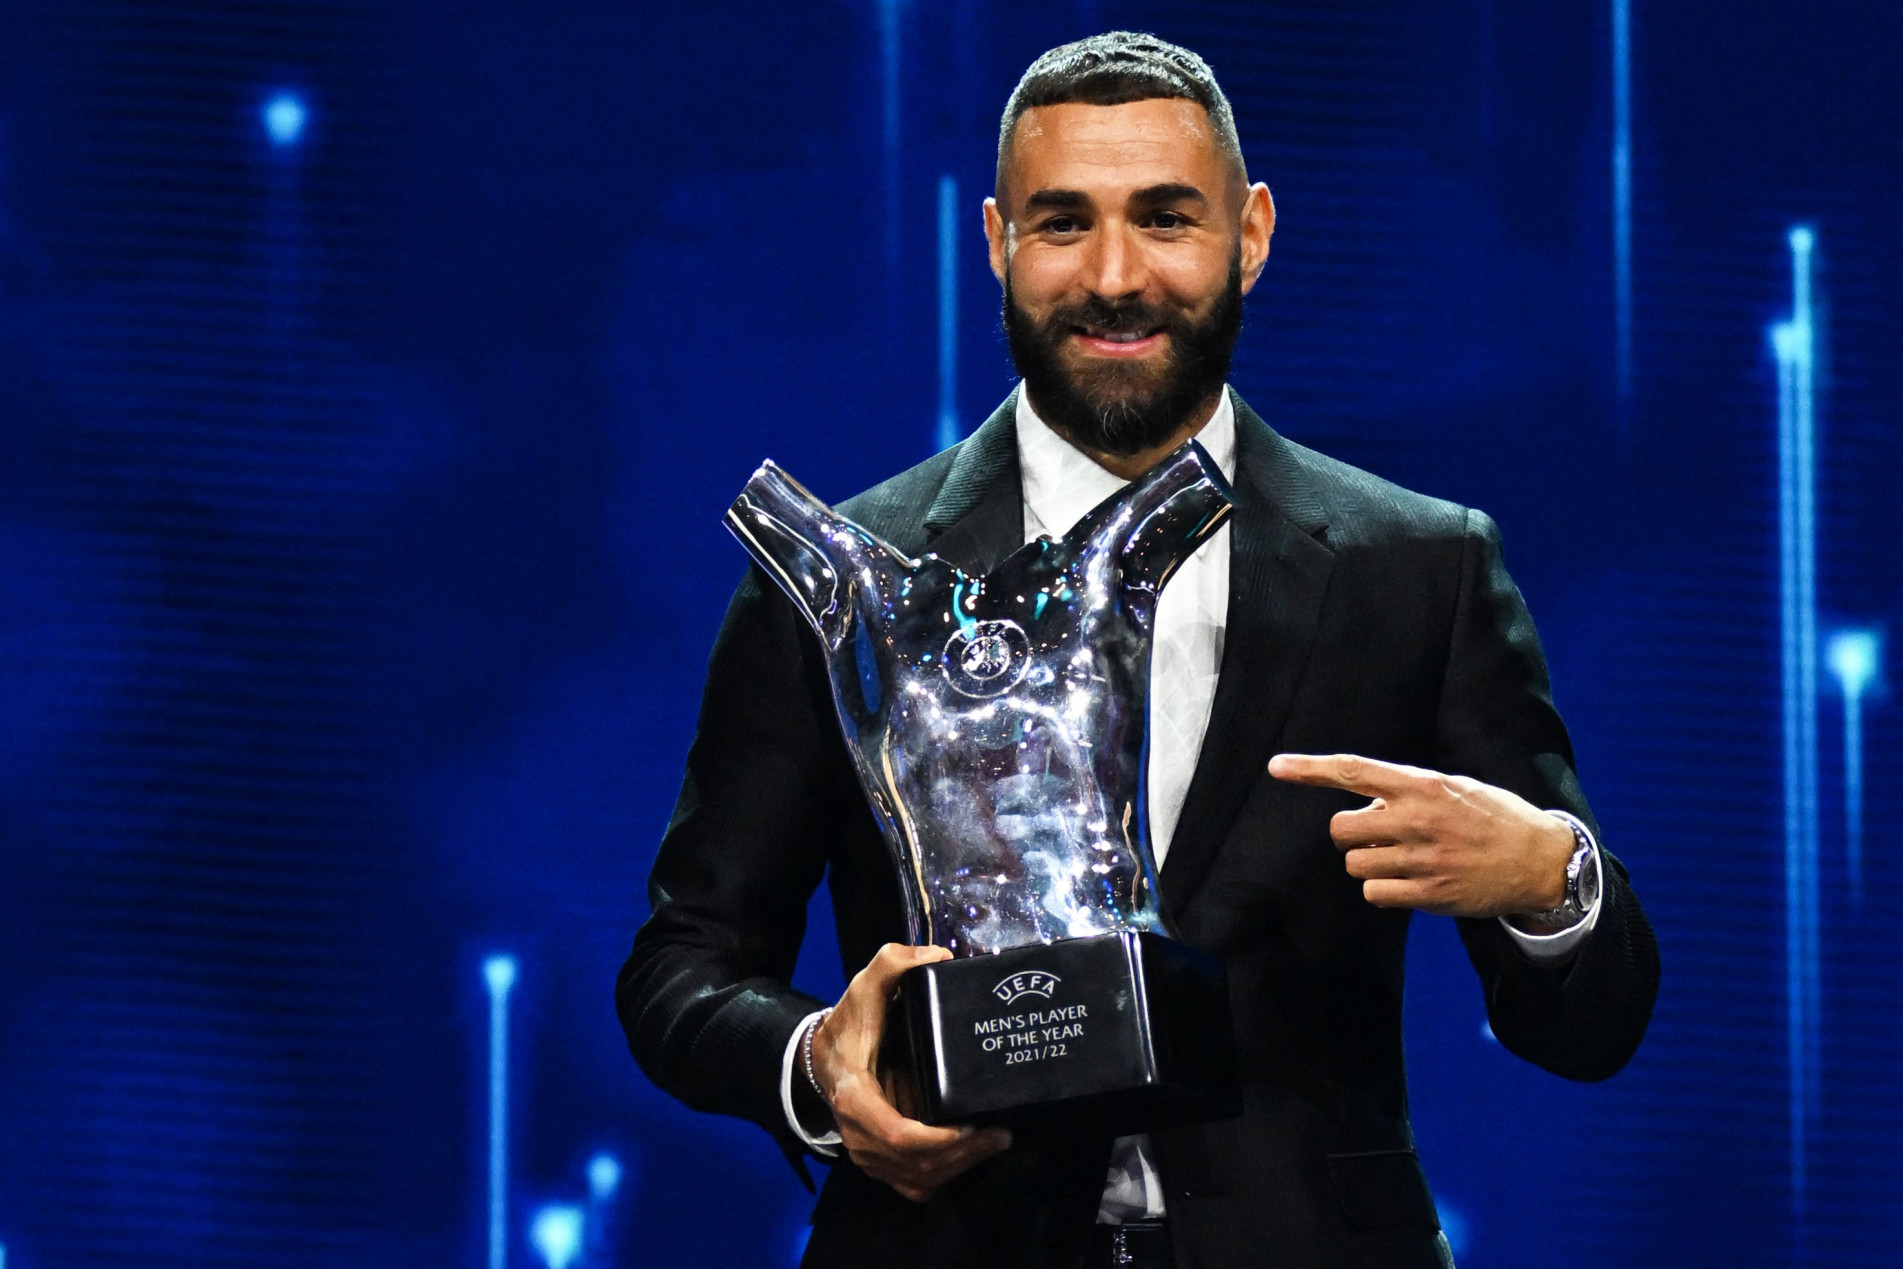 The Best FIFA Awards 2021: Alisson é indicado a prêmio de Melhor